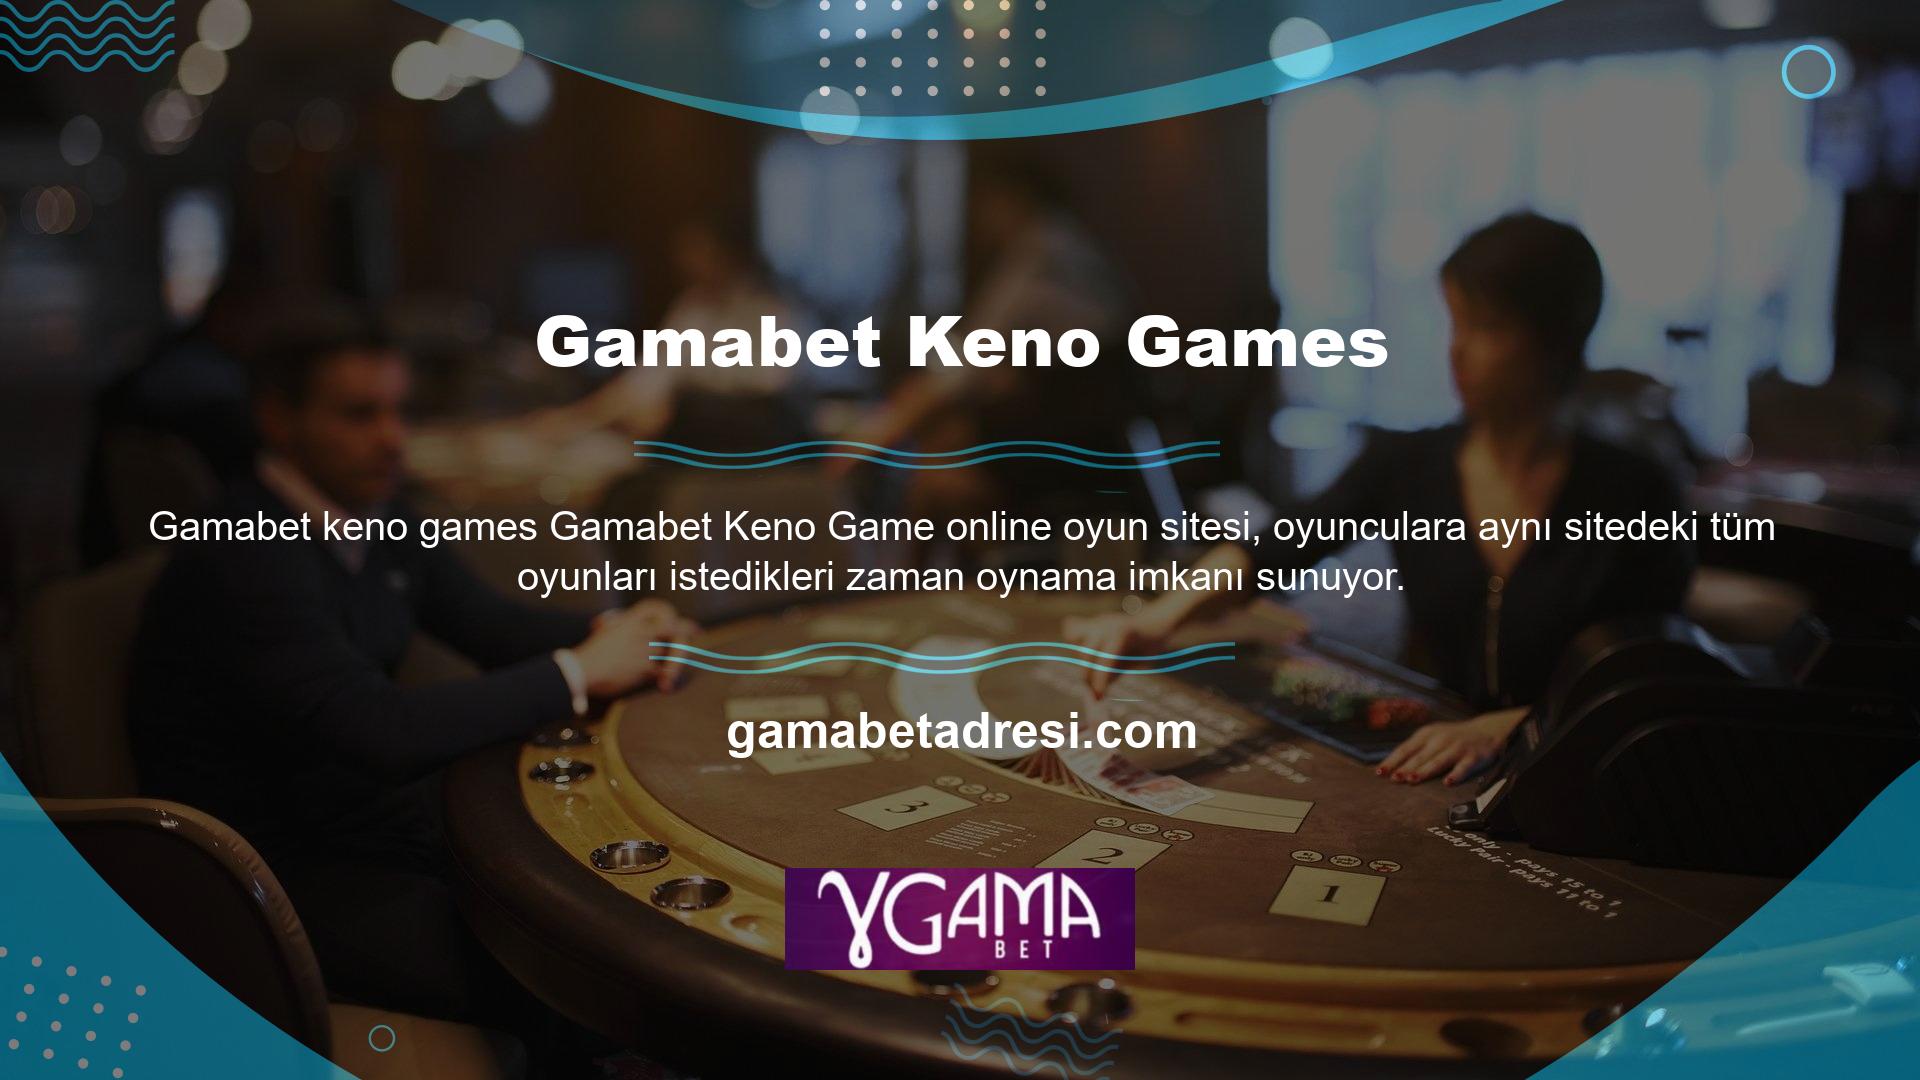 Gamabet keno oyunu online olarak oynanan oyunlardan biridir